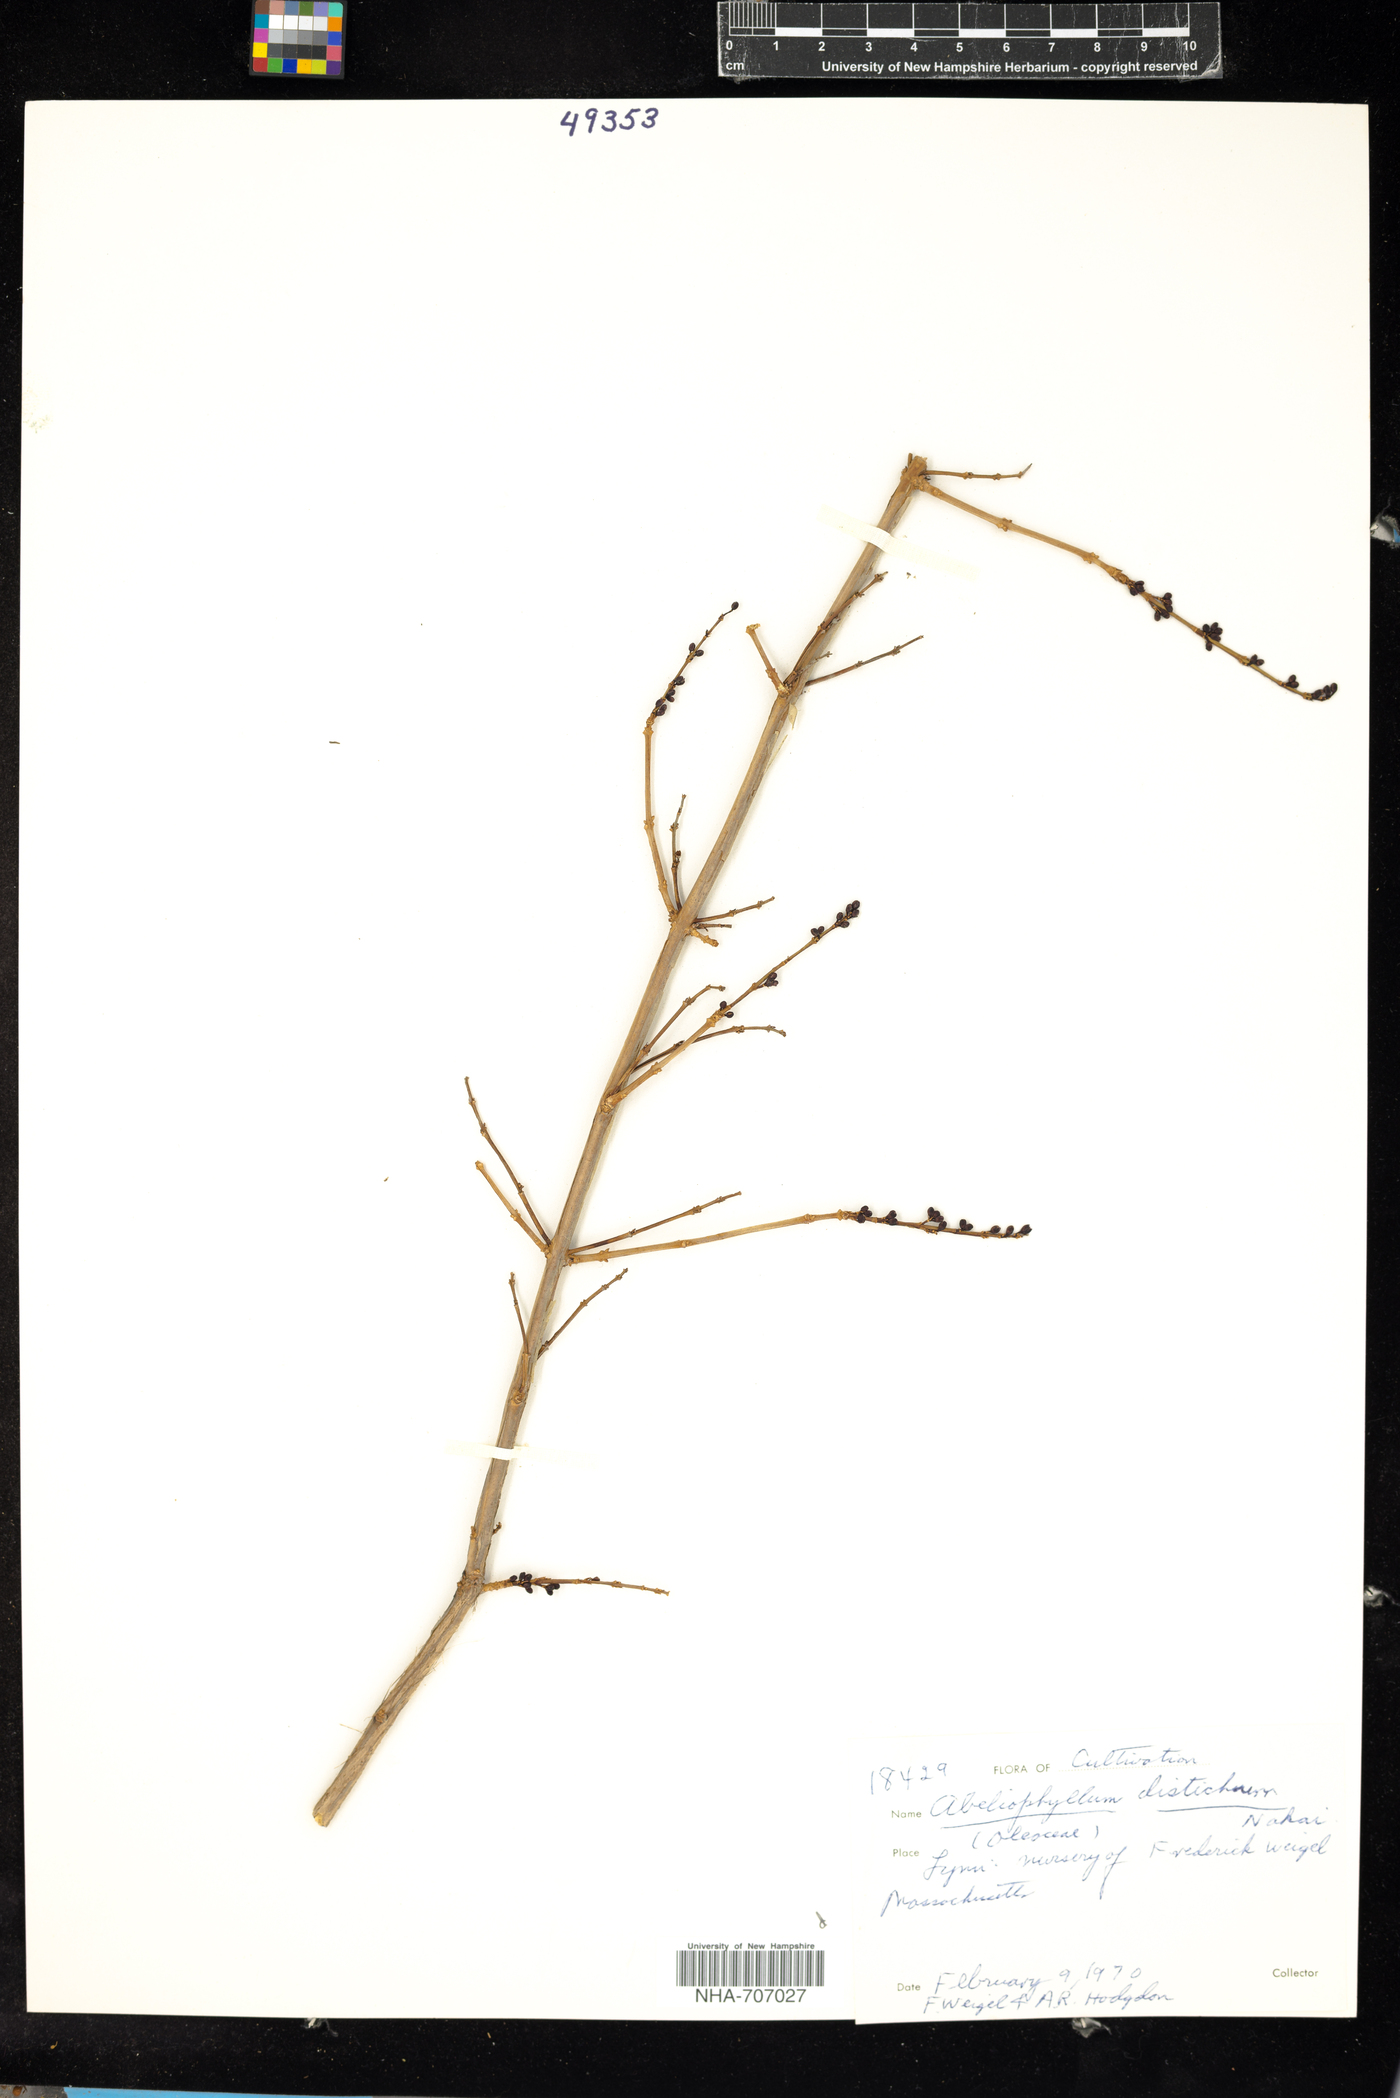 Abeliophyllum distichum image